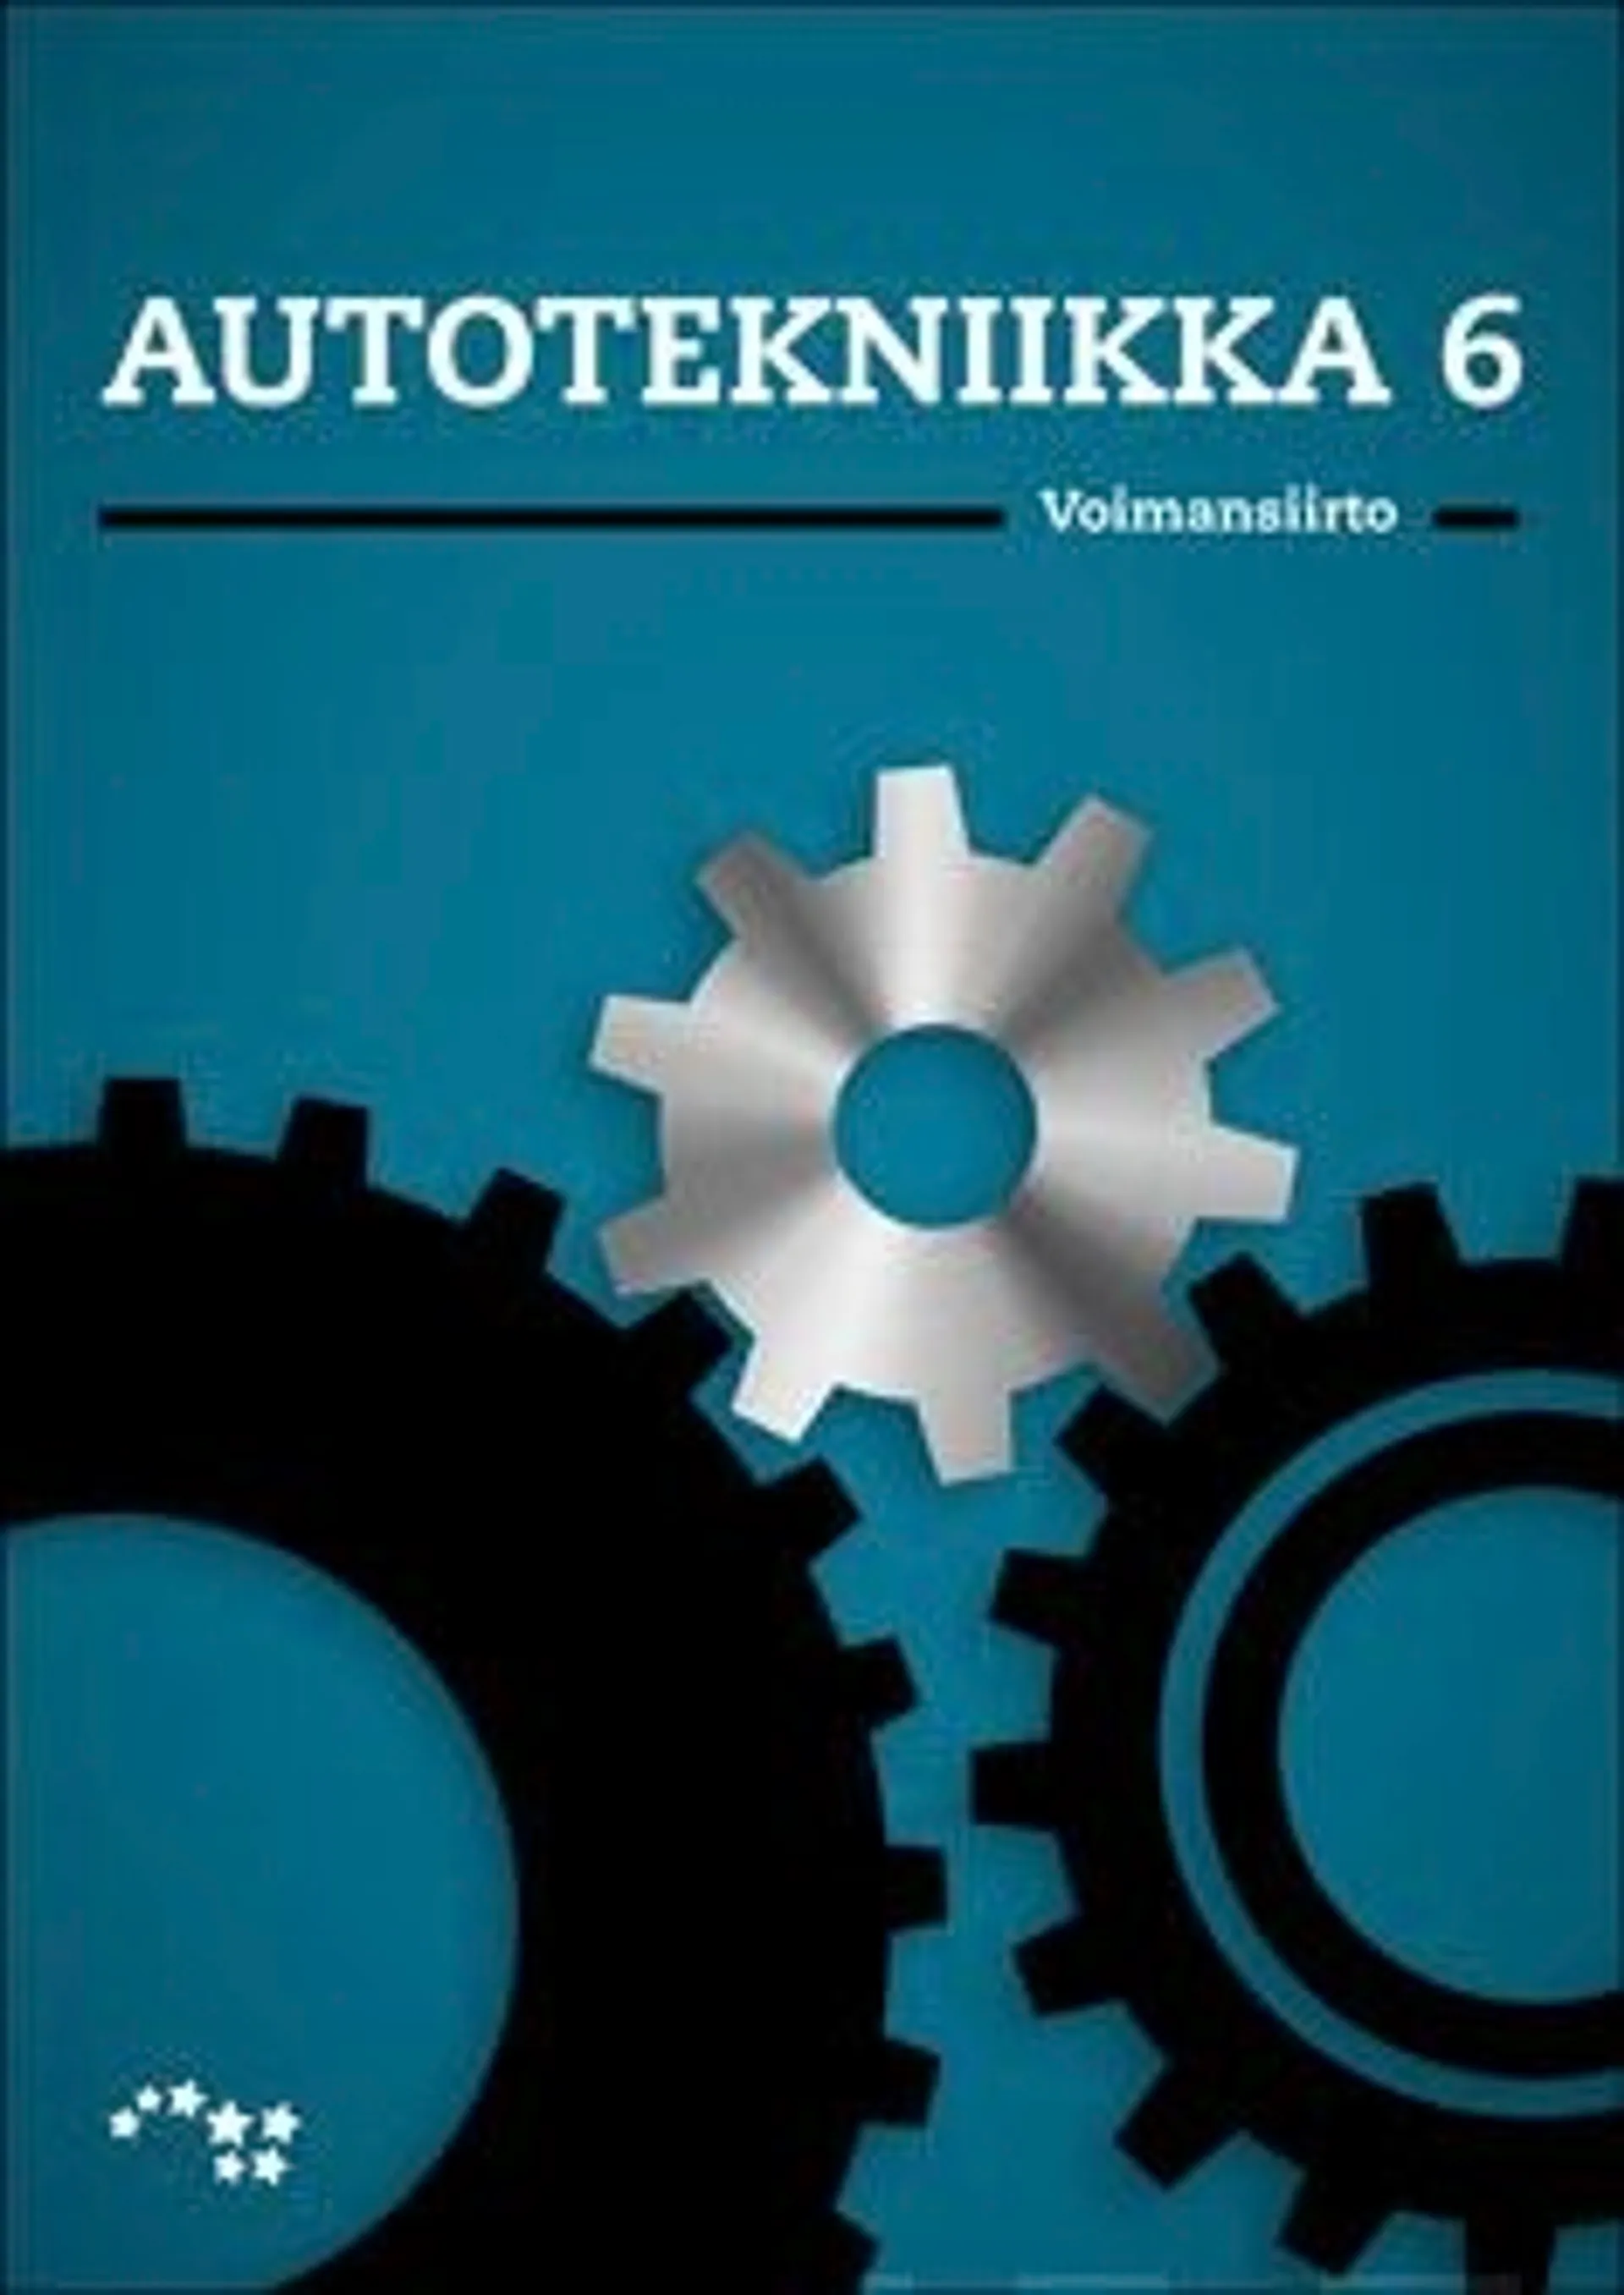 Karhima, Autotekniikka 6